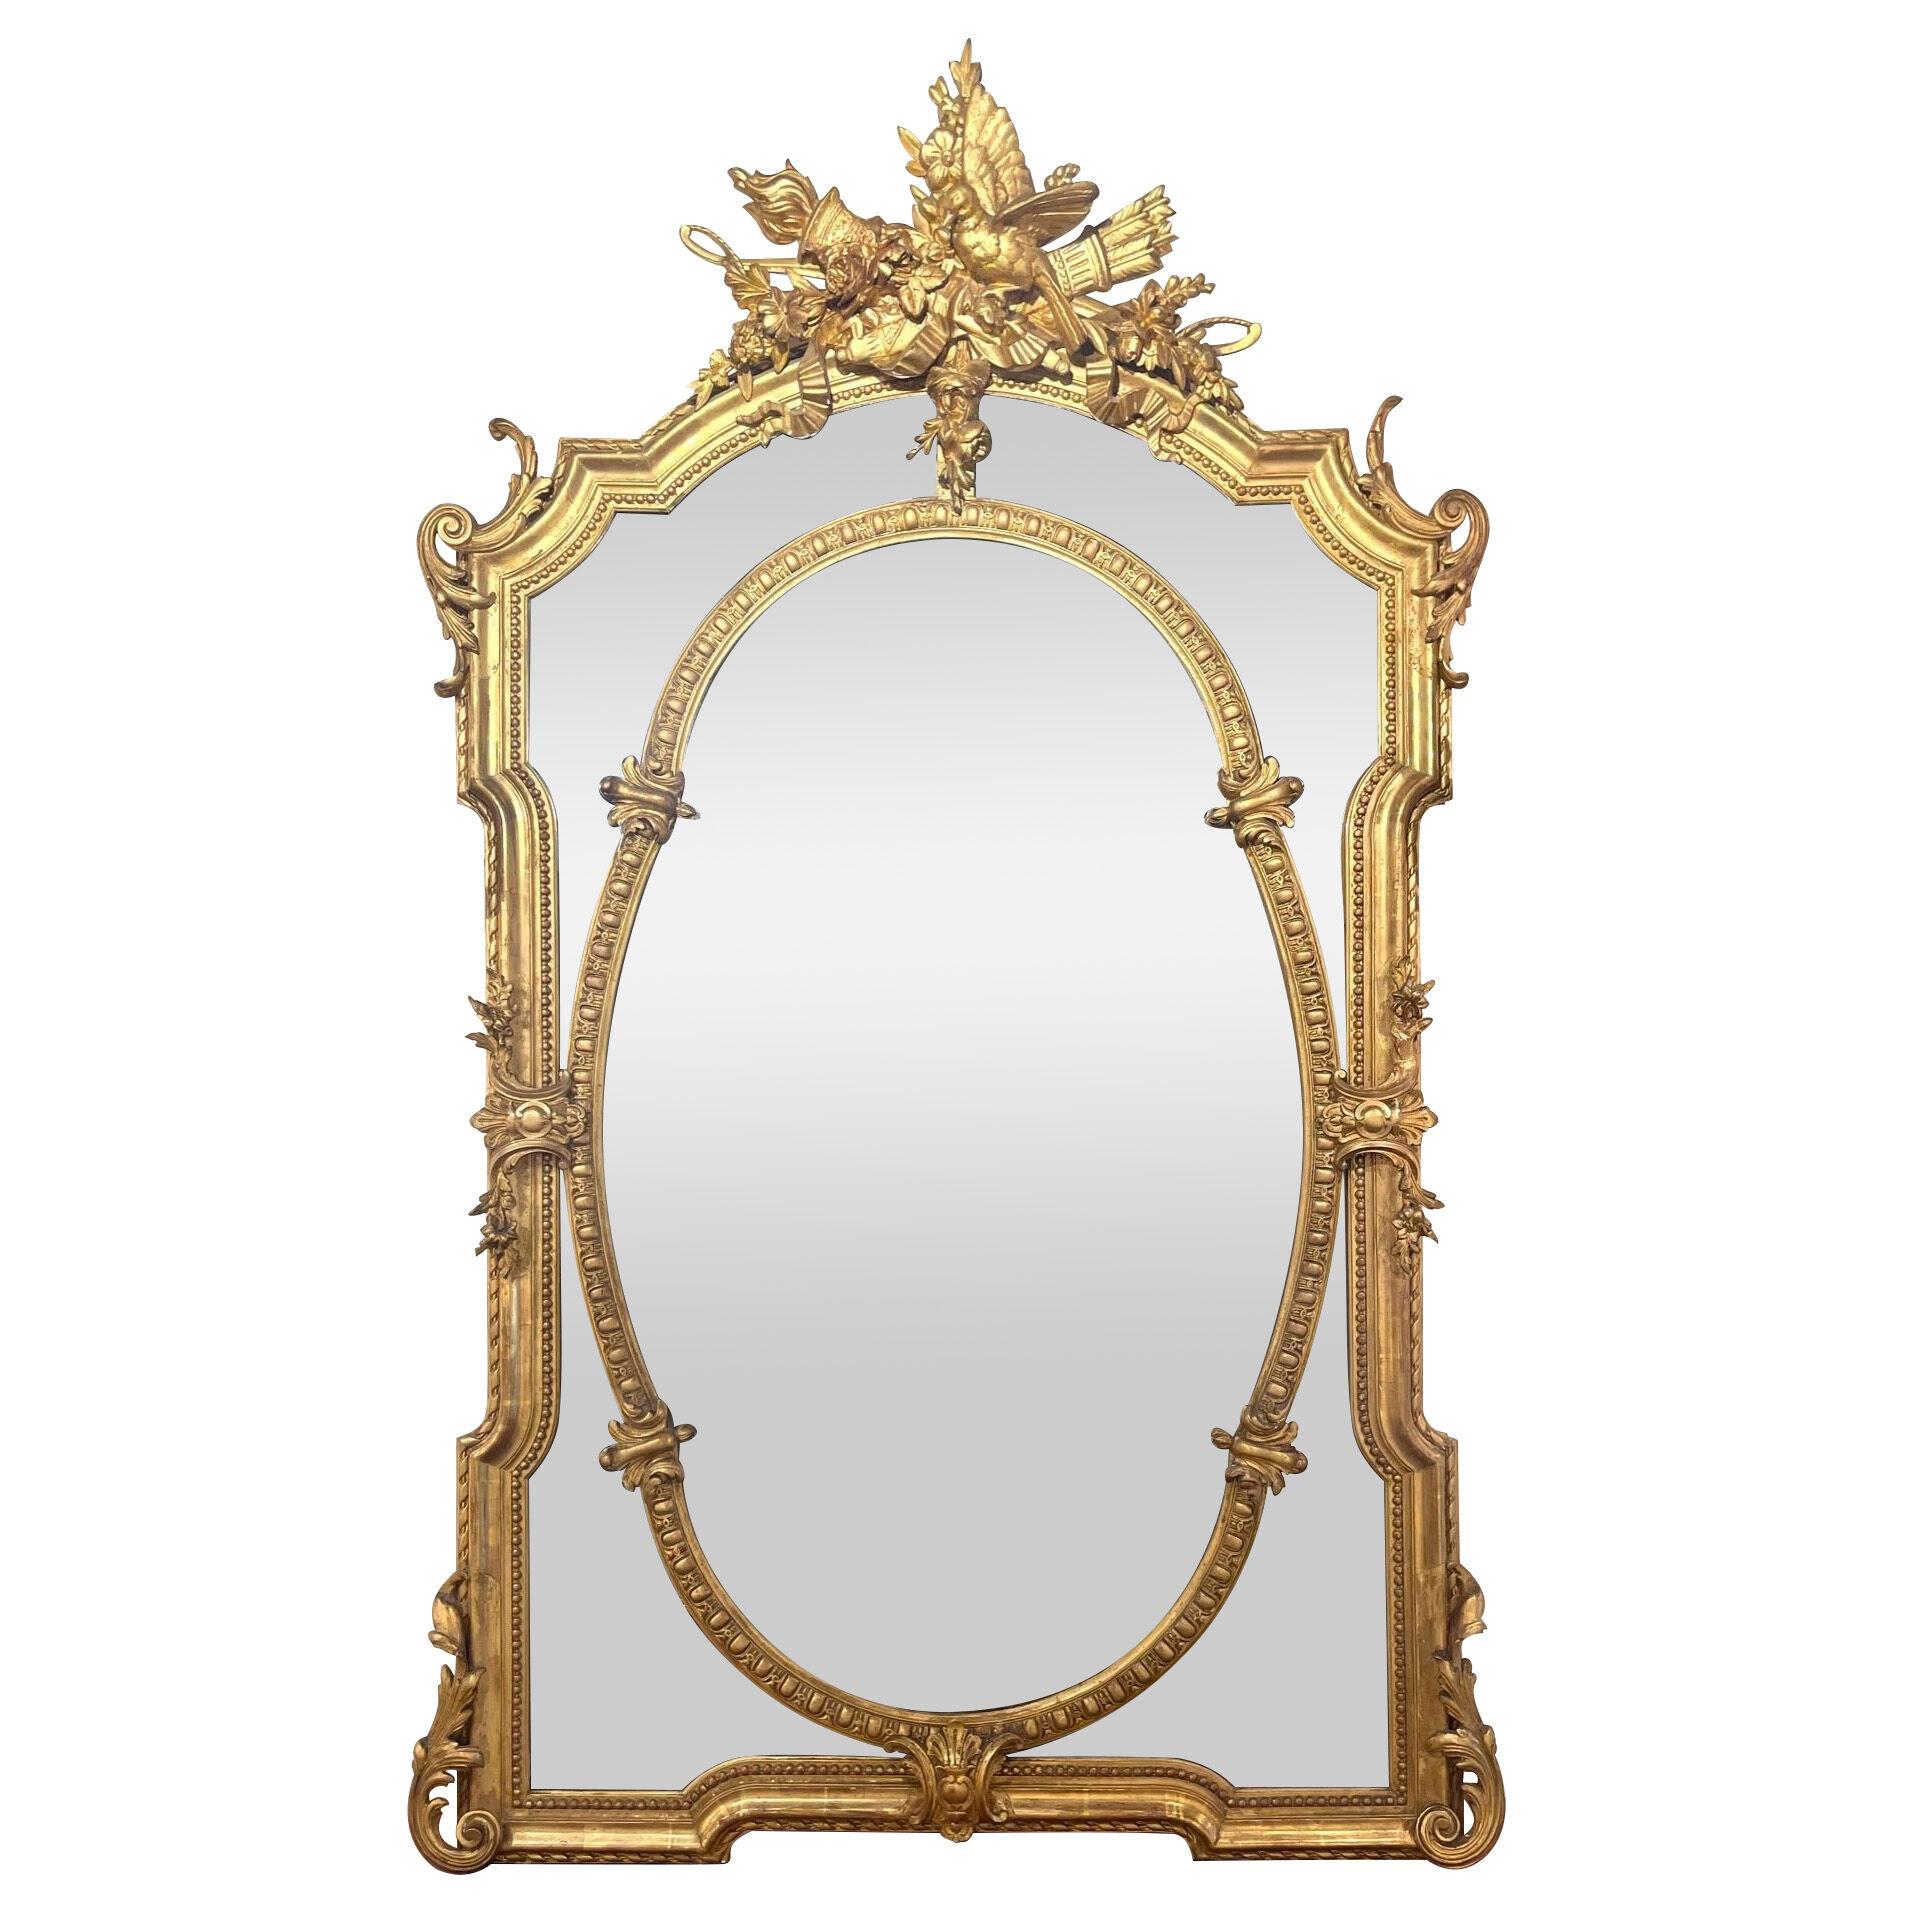 19th Century French Louis XVI Mirror